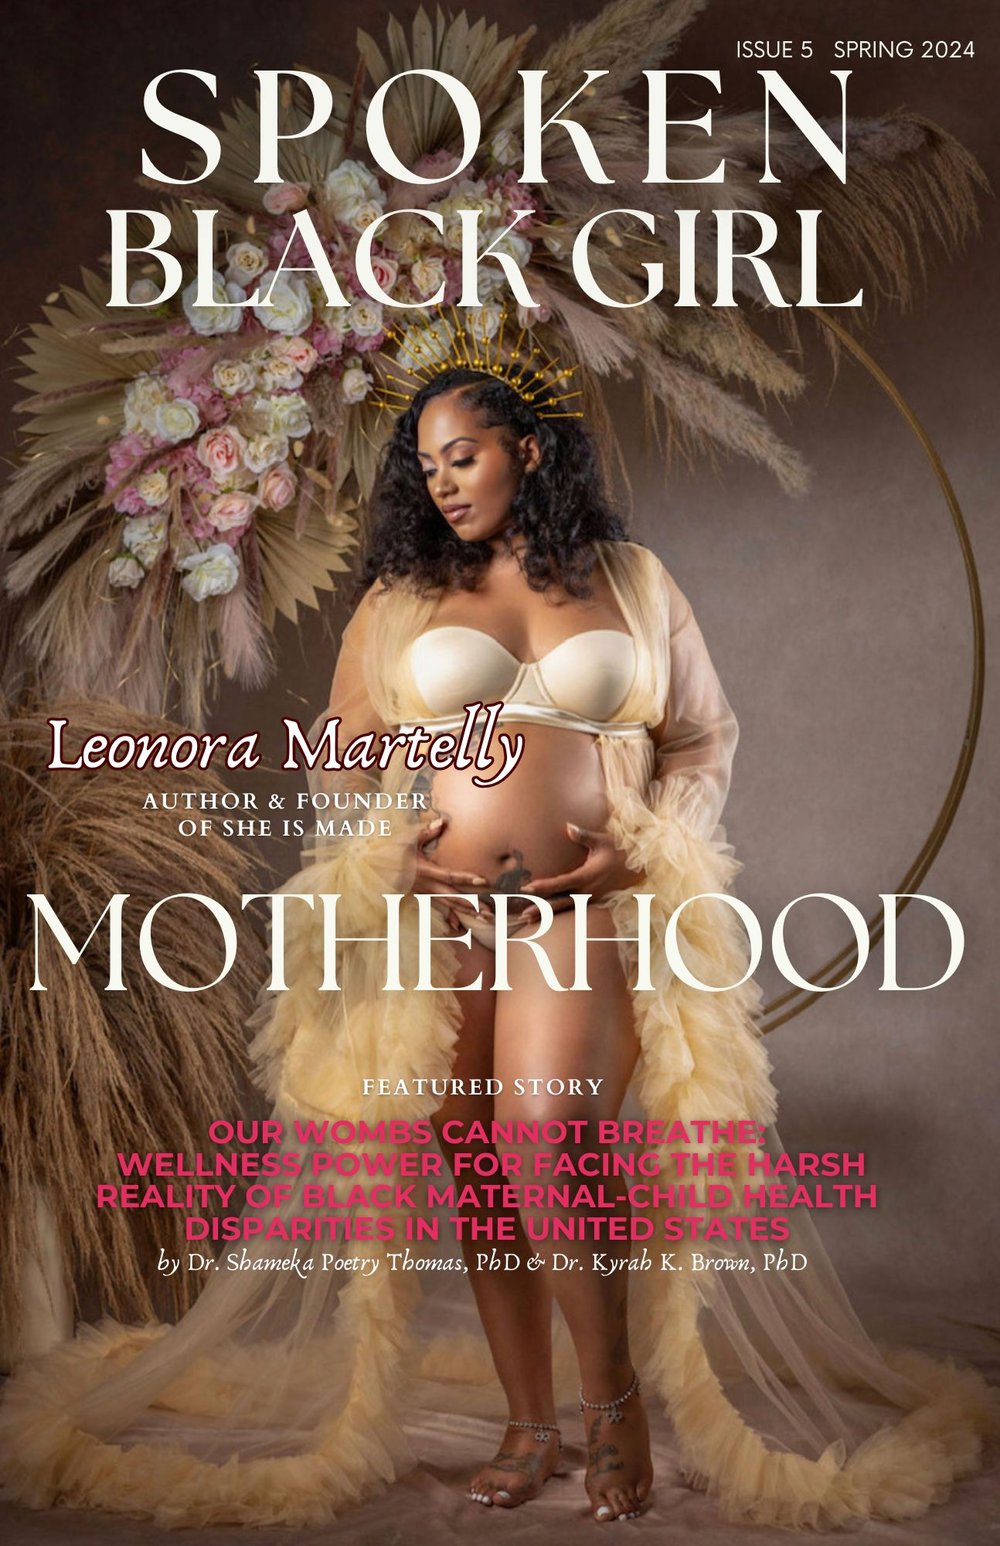 Spoken Black Girl Magazine Issue 5: Motherhood